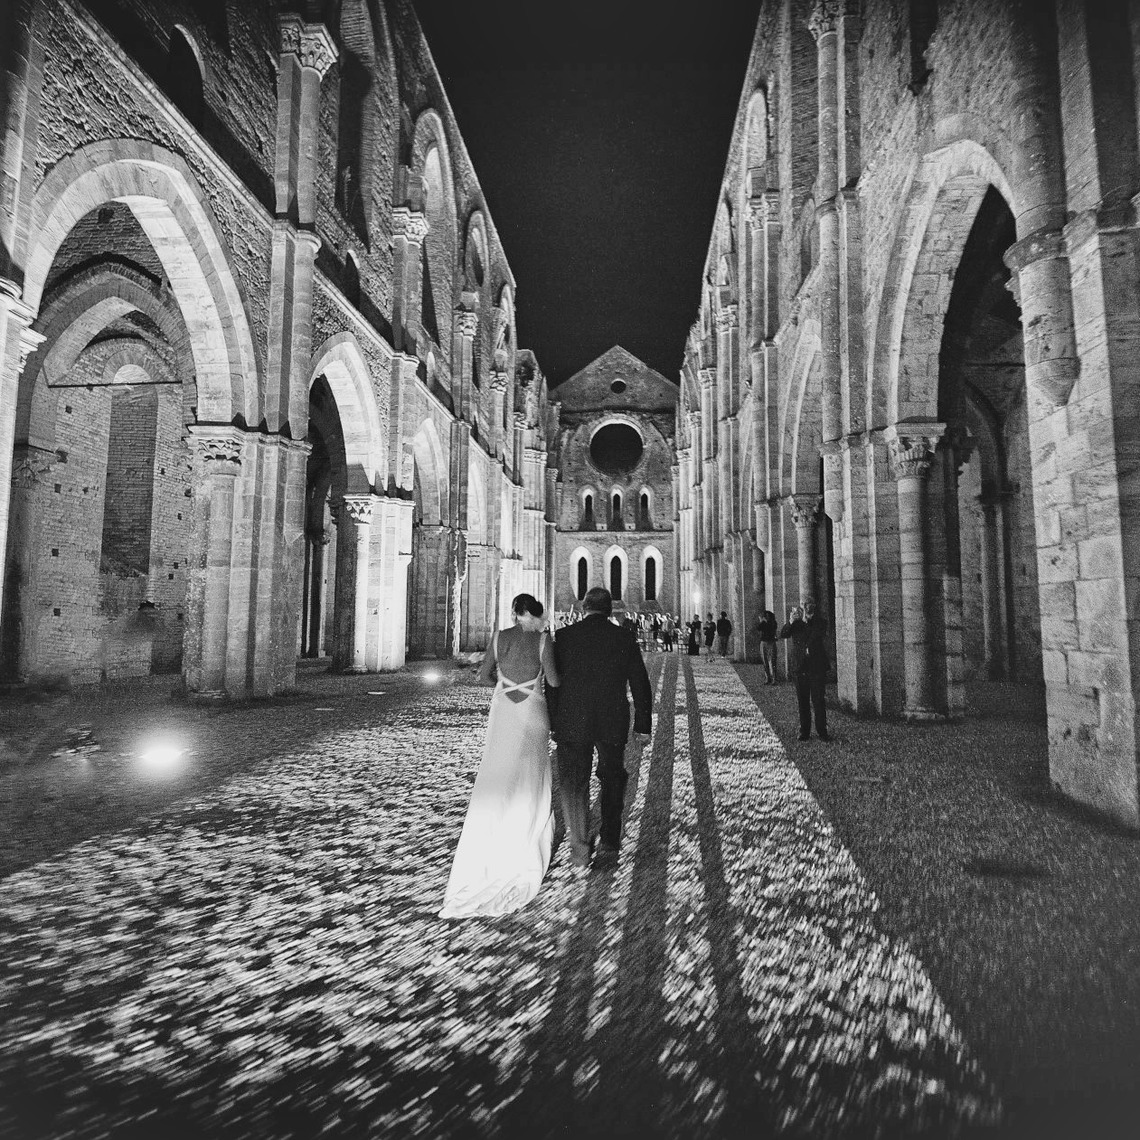 Matrimonio, fotografo, fotografia, San Galgano, Chiusdino, luogo romantico, Italia, migliore, notte